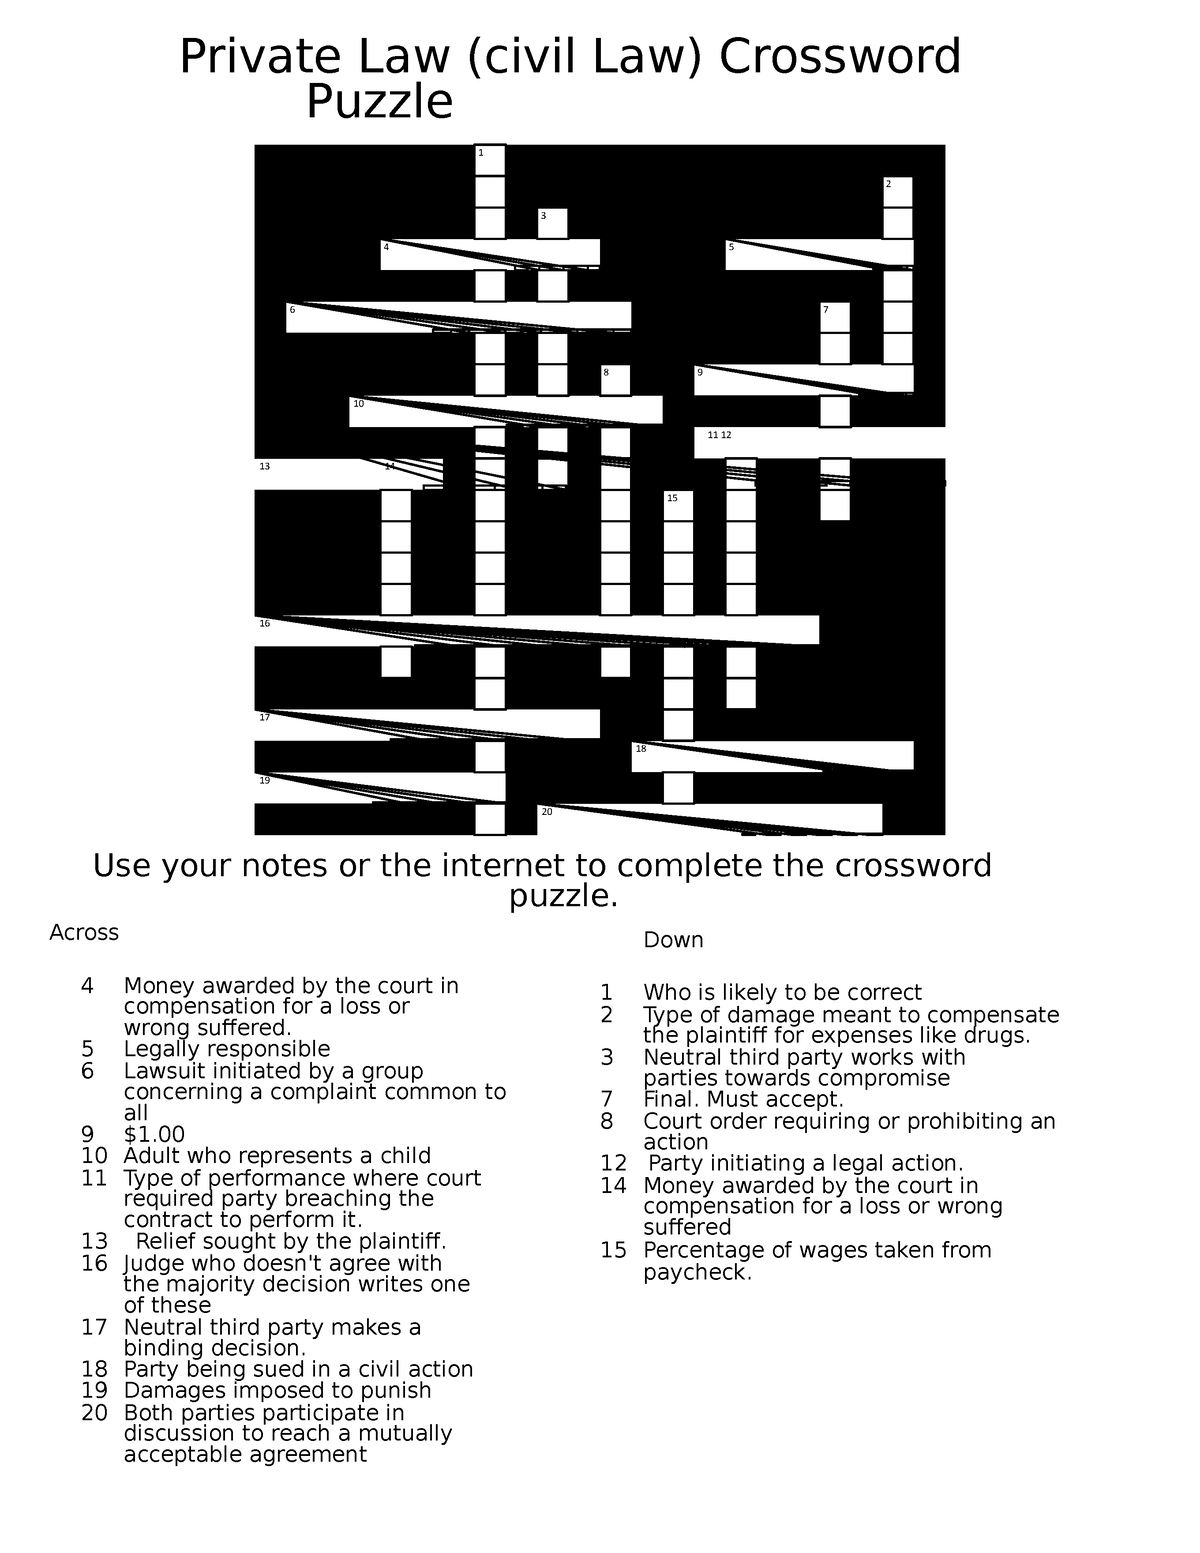 Crossword puzzle law 1 2 3 4 5 6 7 8 9 10 11 12 13 14 15 16 17 18